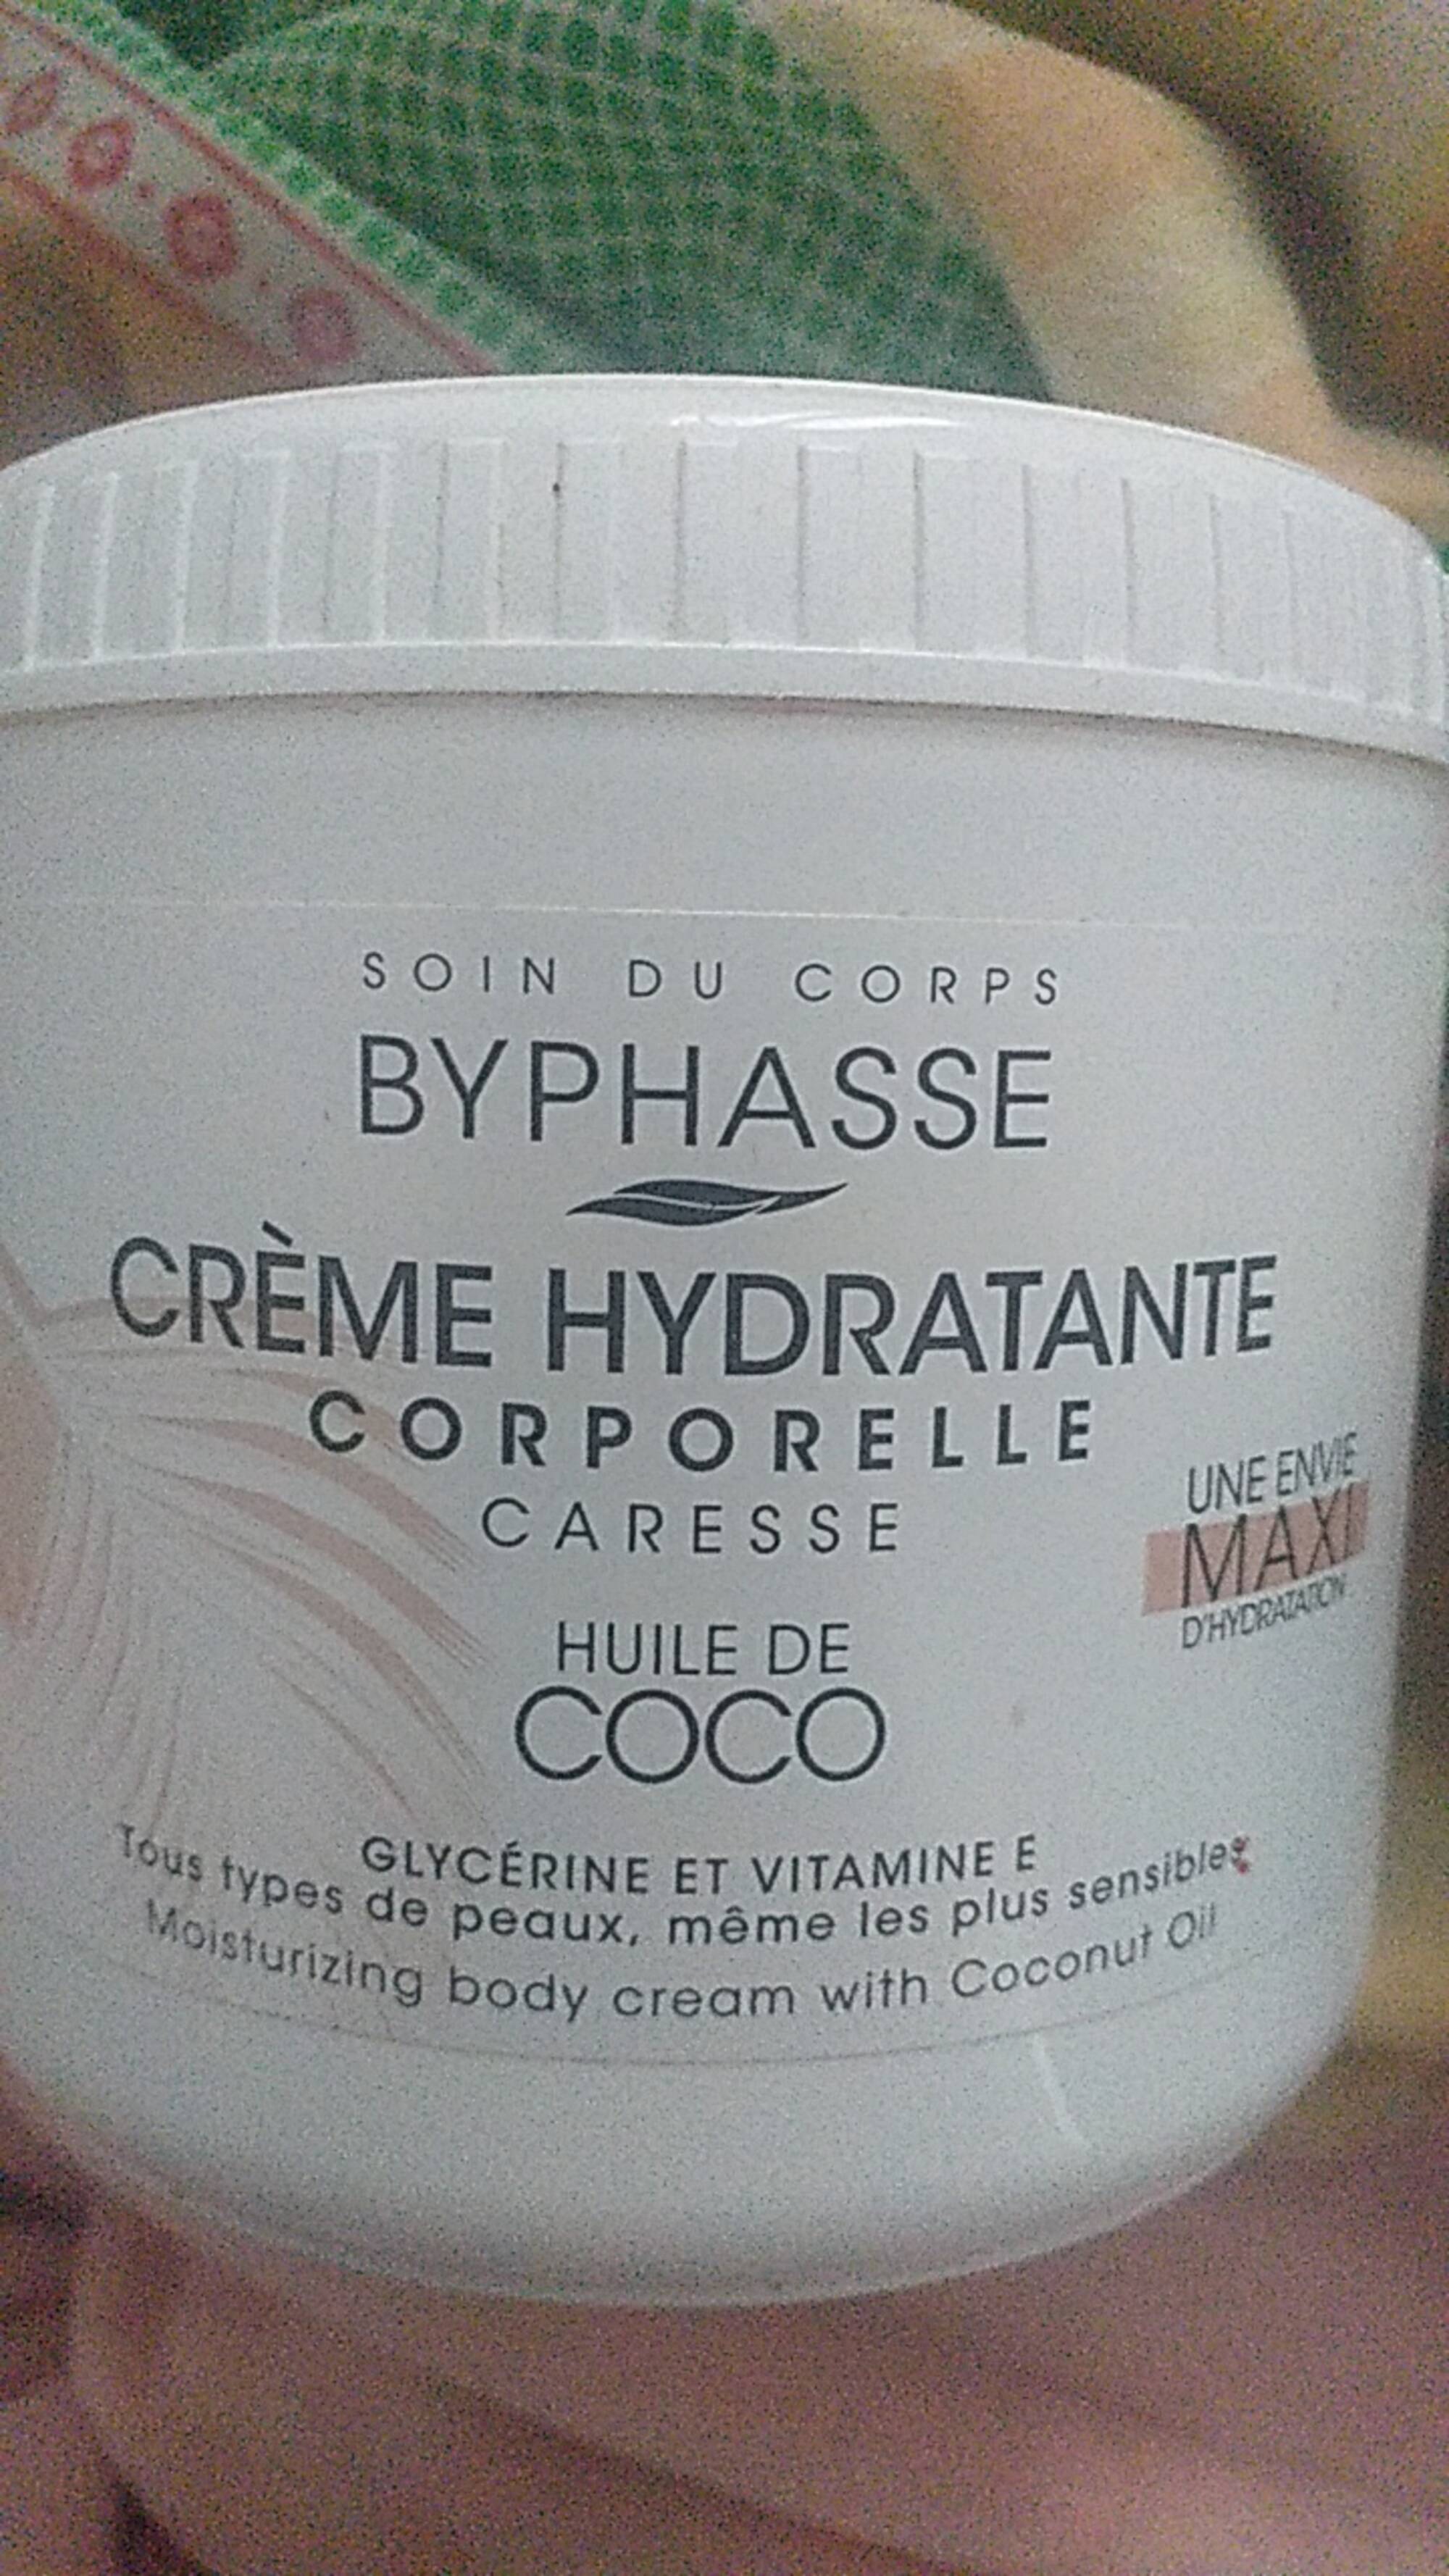 BYPHASSE - Crème hydratante corporelle à l'huile de coco